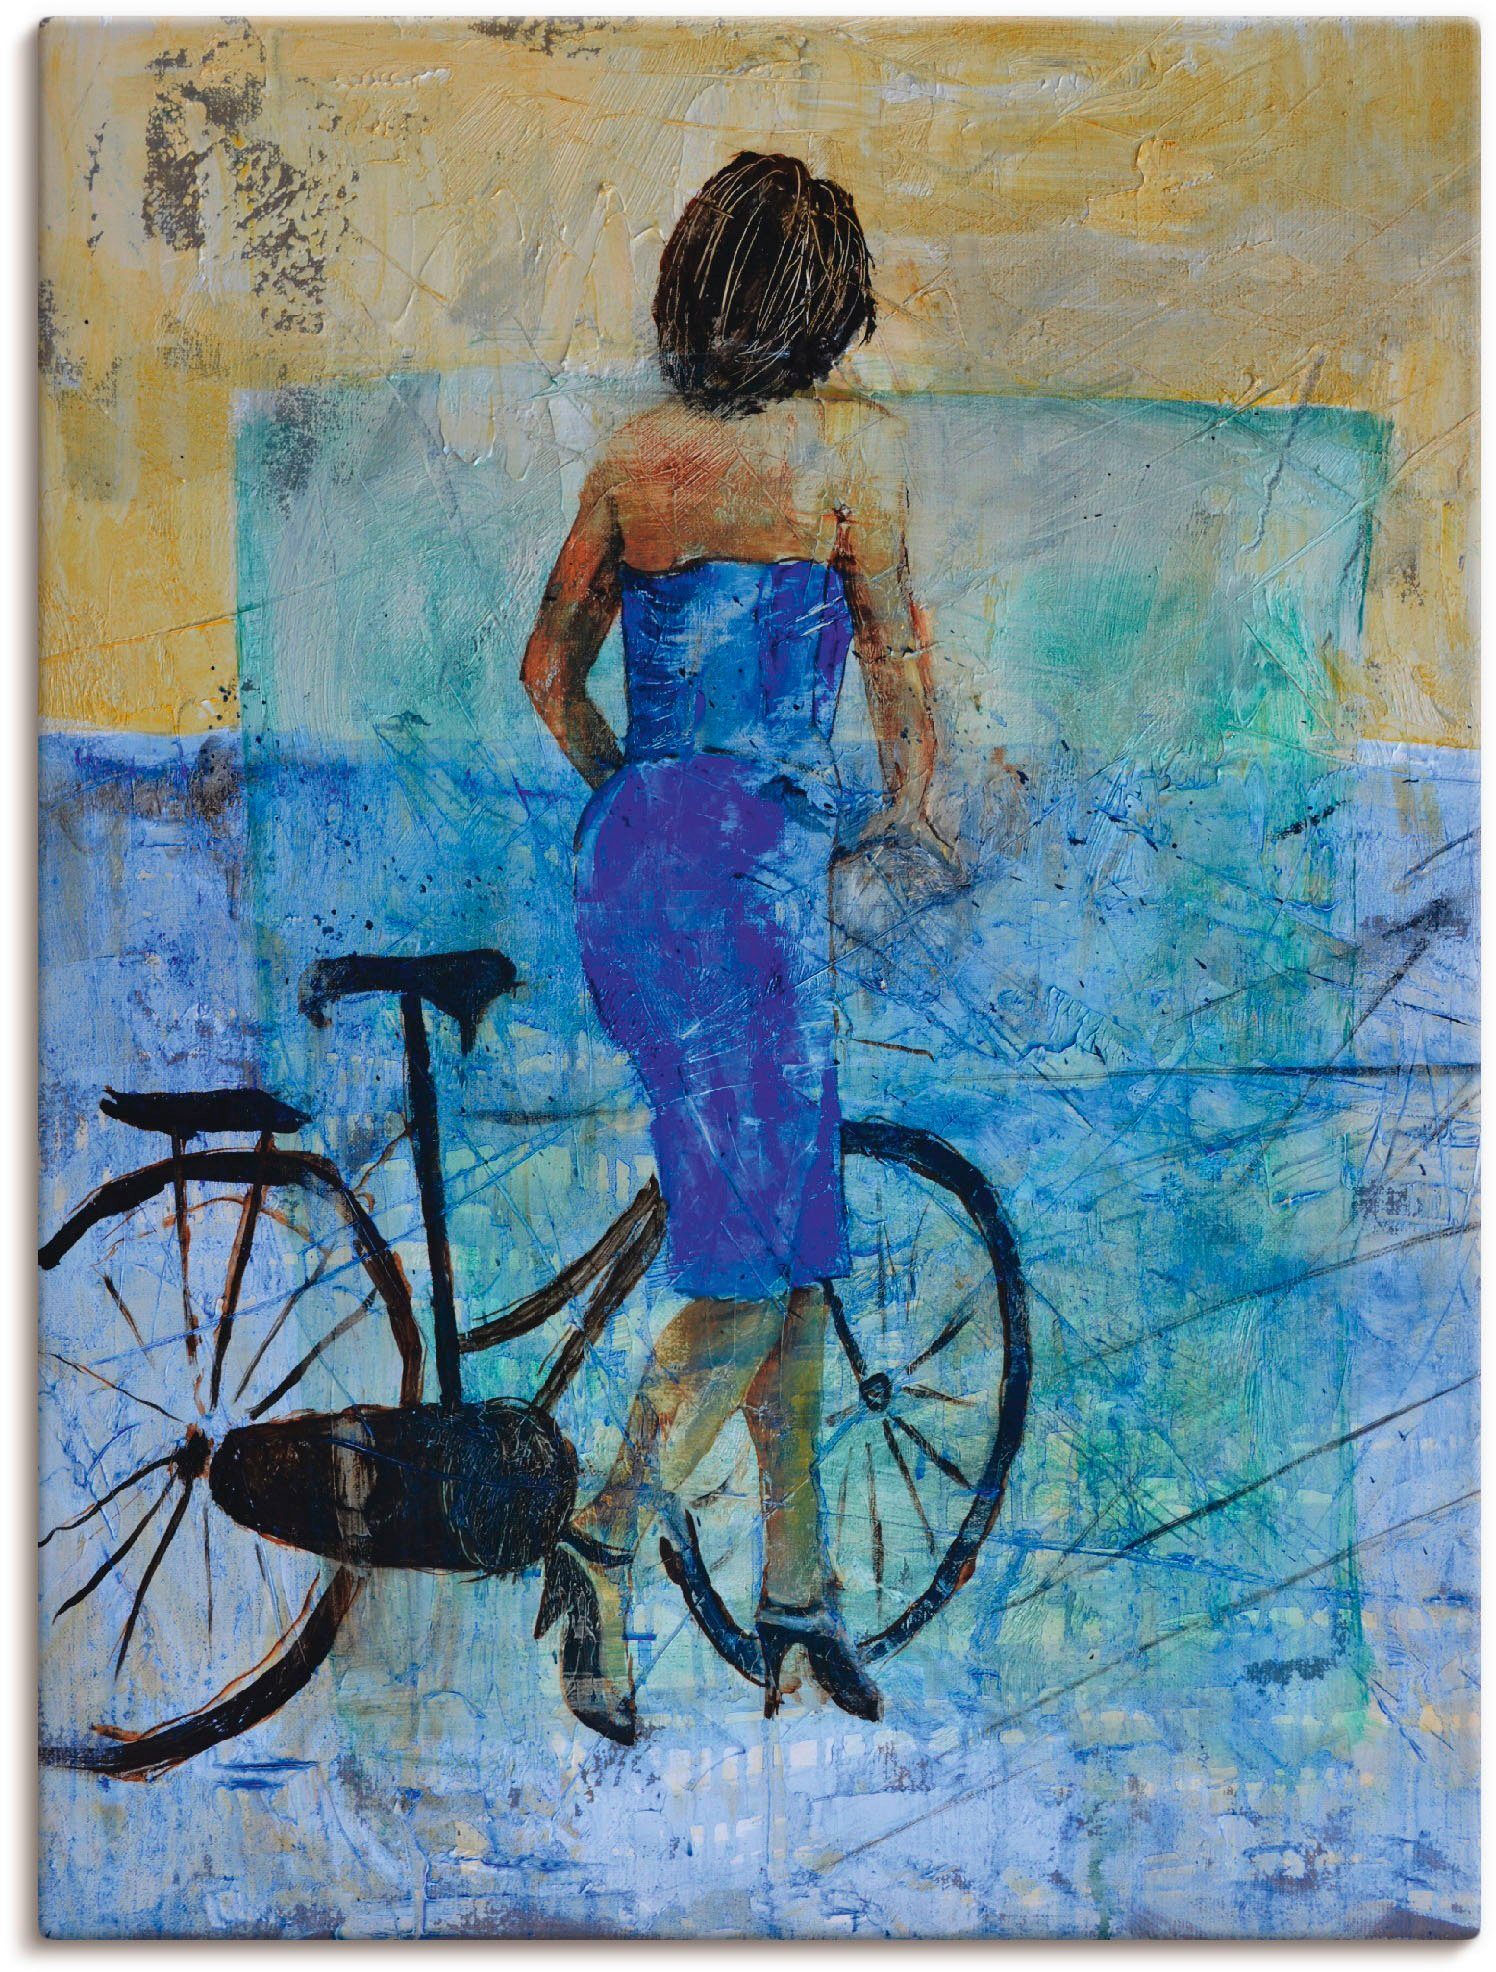 Artland Artprint Een meisje met een fiets in vele afmetingen & productsoorten - artprint van aluminium / artprint voor buiten, artprint op linnen, poster, muursticker / wandfolie o